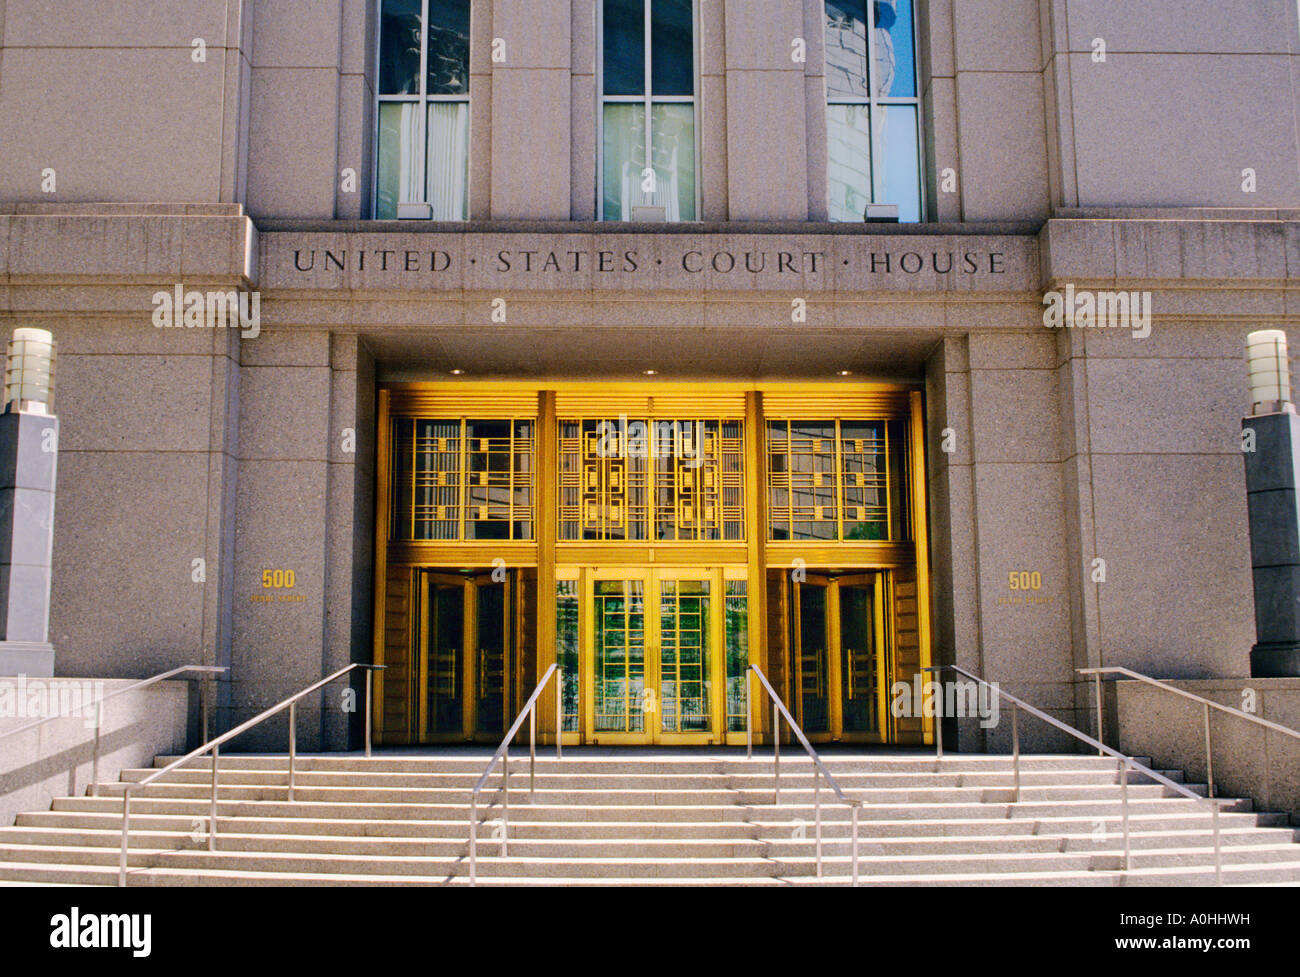 US-Gerichtsgebäude, südlicher Bezirk von New York, Daniel Patrick Moynahan Court. Foley Square New York City. Art déco-Äußere. US Court House Stockfoto